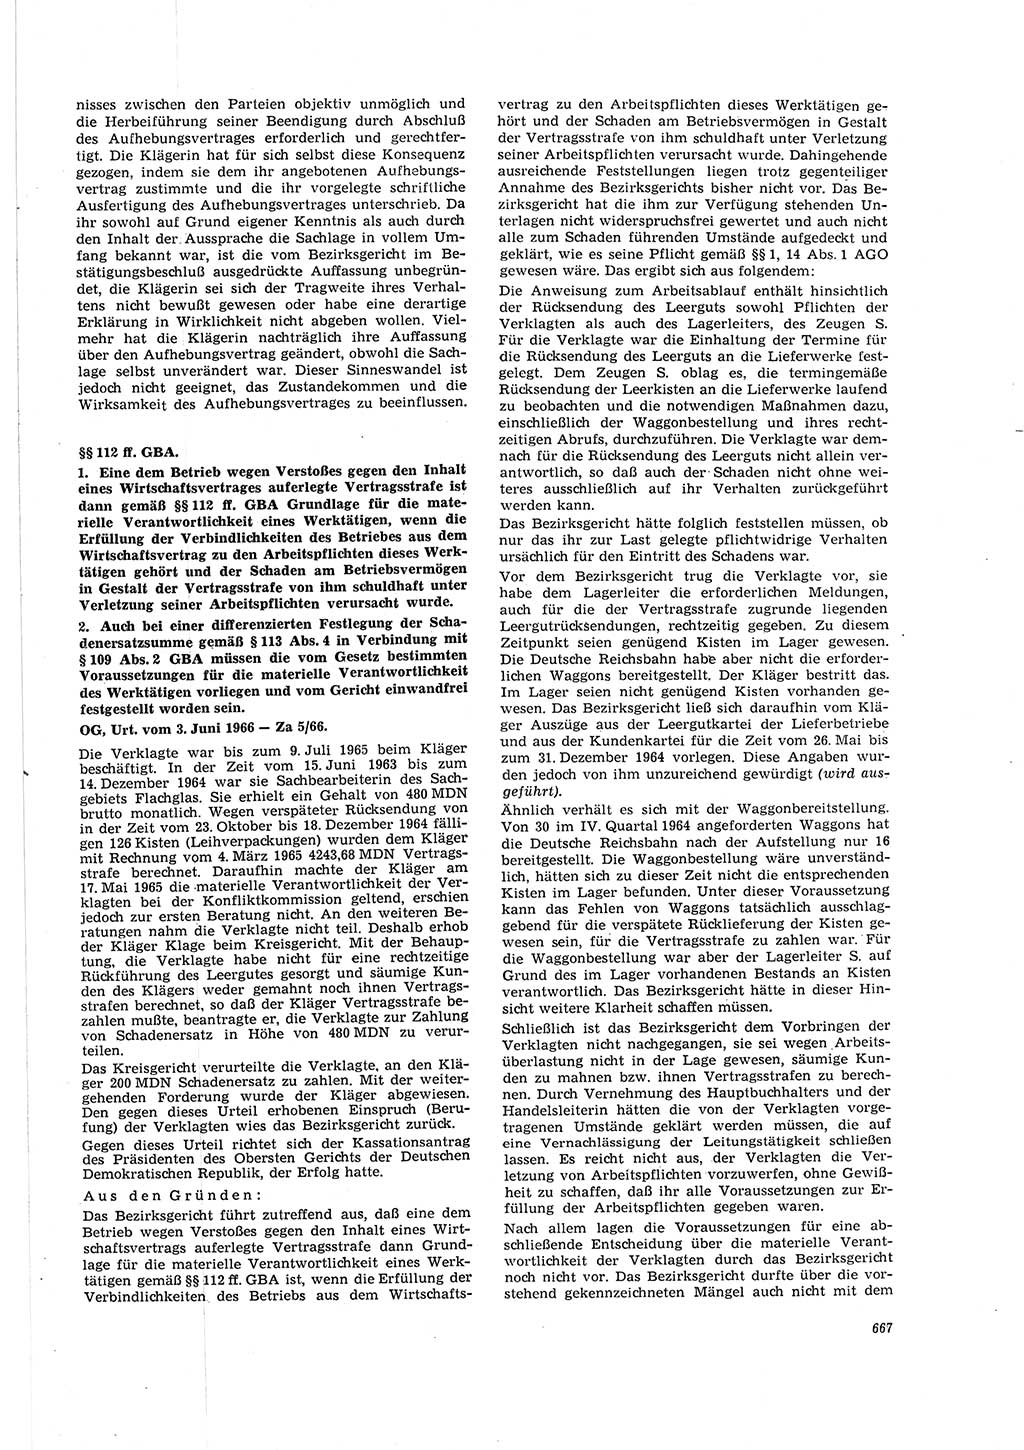 Neue Justiz (NJ), Zeitschrift für Recht und Rechtswissenschaft [Deutsche Demokratische Republik (DDR)], 20. Jahrgang 1966, Seite 667 (NJ DDR 1966, S. 667)